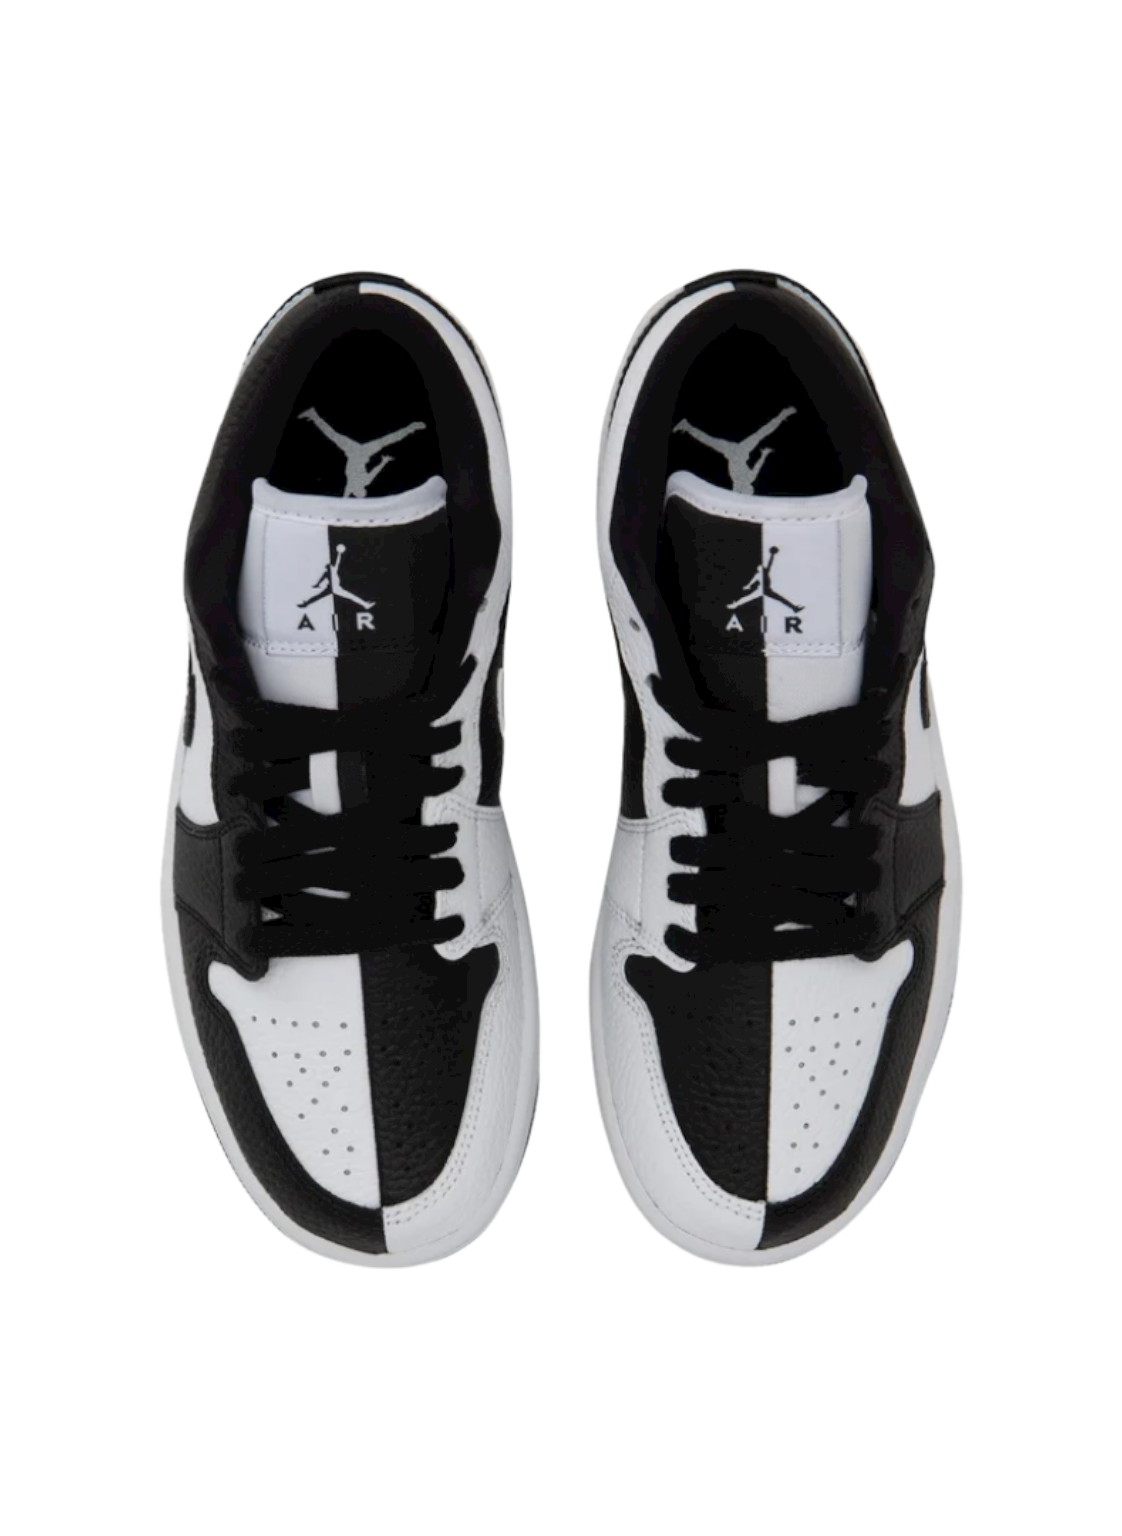 Air Jordan 1 Low SE Black and White